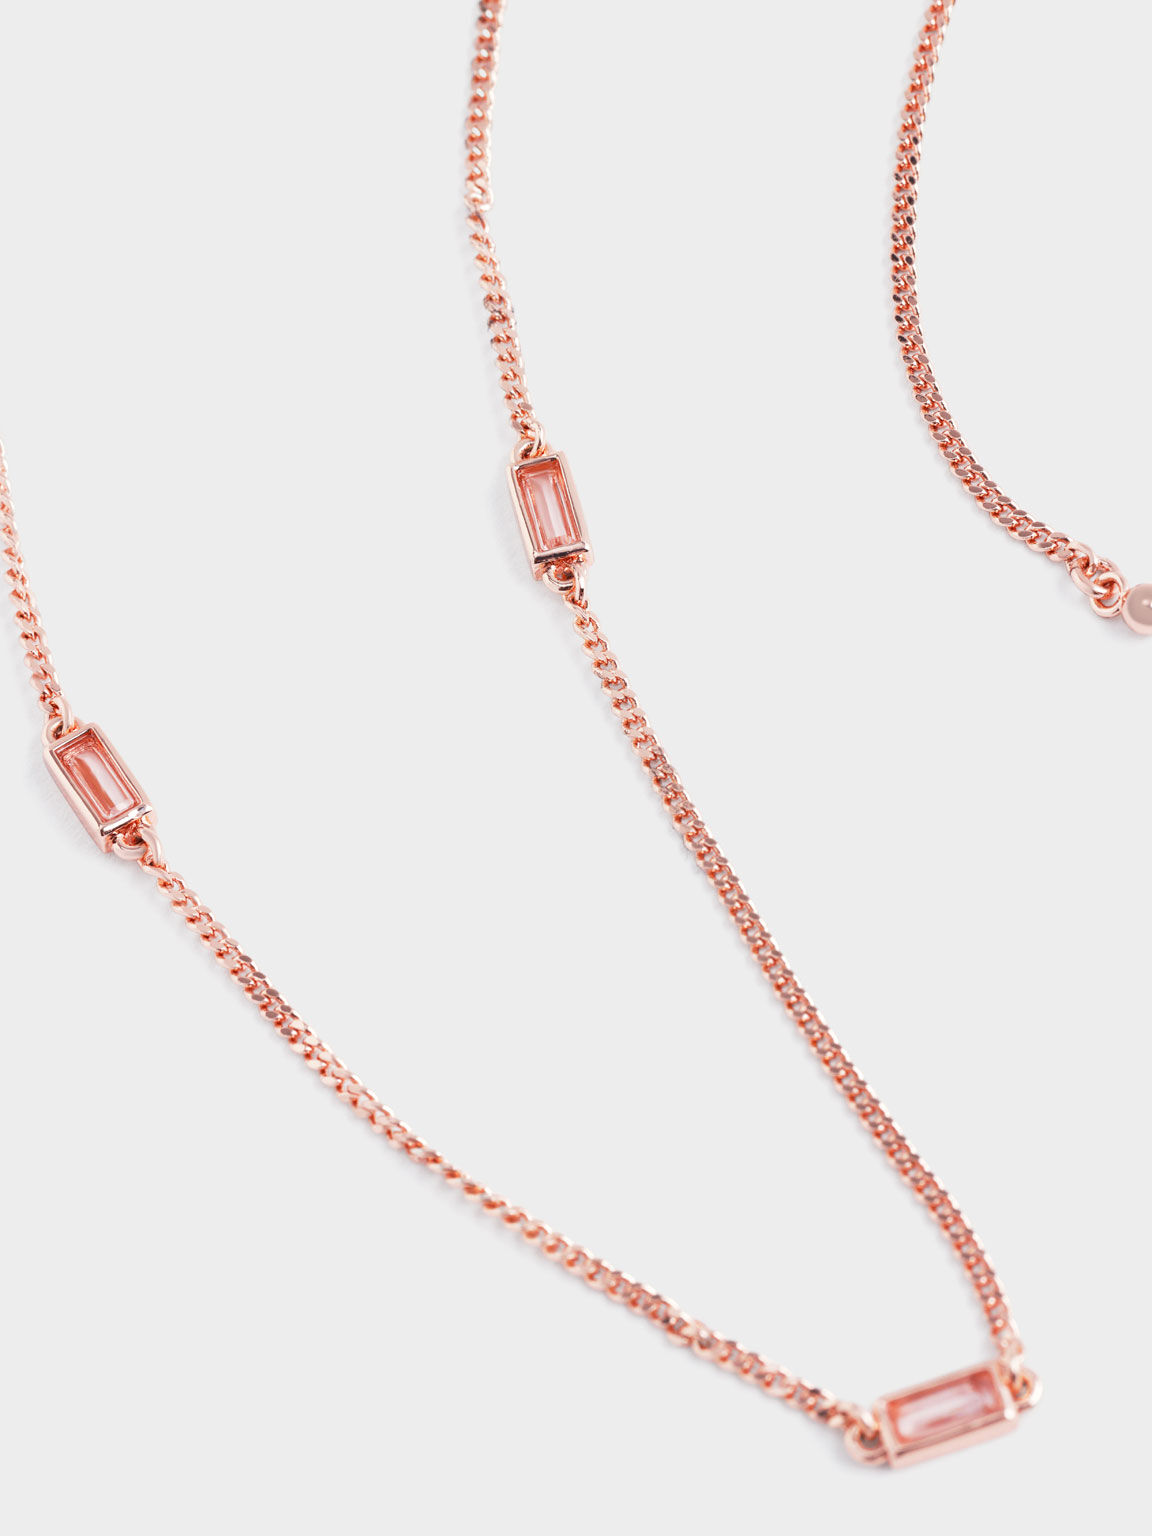 Crystal-Embellished Matinee Necklace, Rose Gold, hi-res